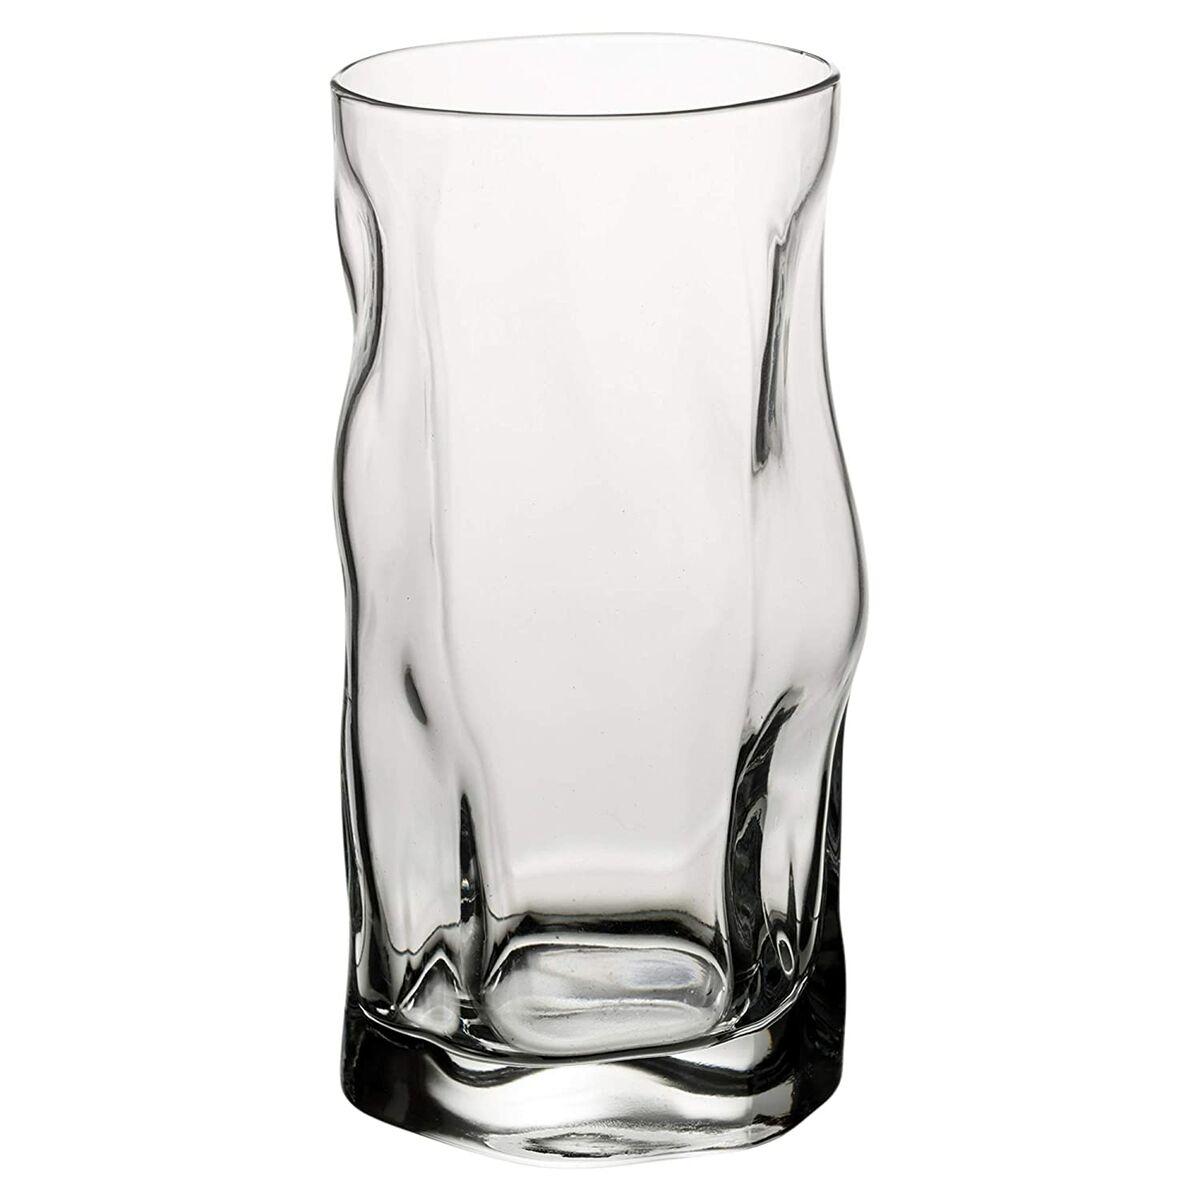 Glass Bormioli Rocco Sorgente Glass 450 ml (6 Units)